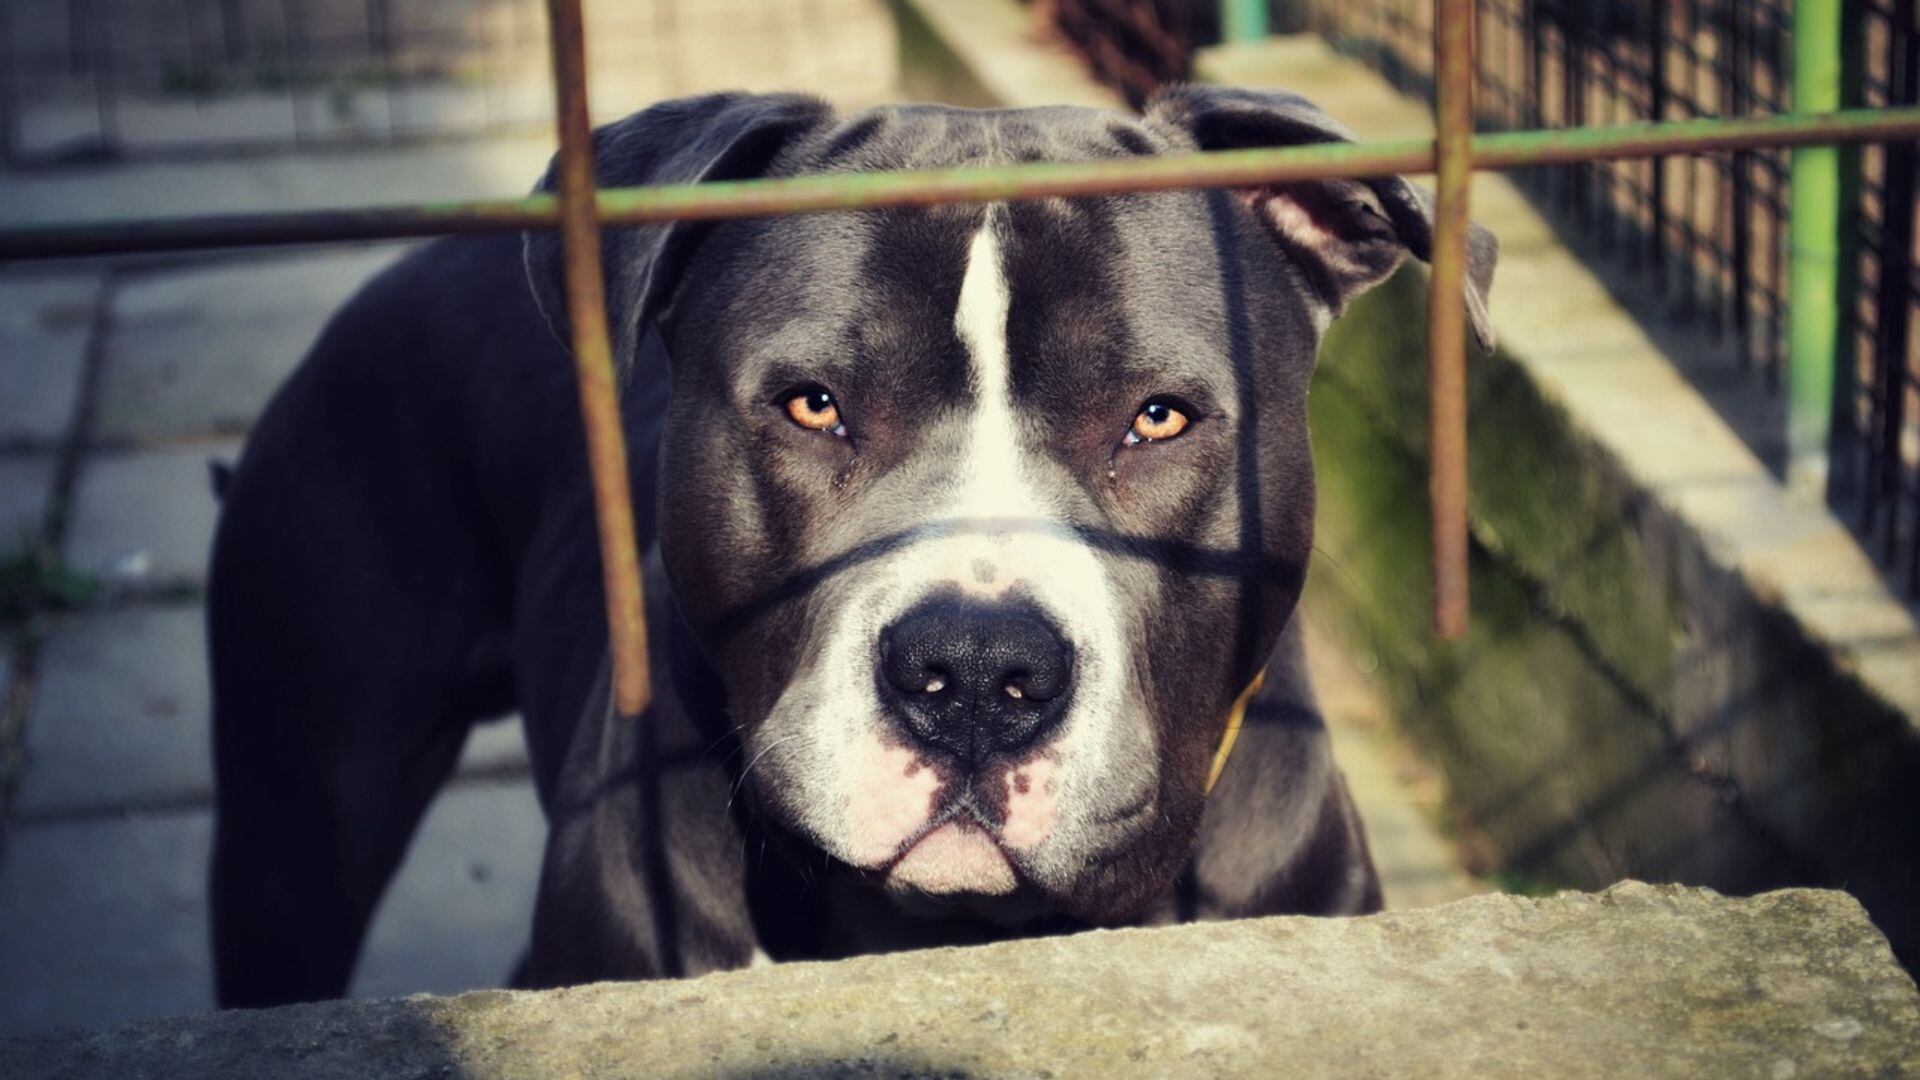 ¿Los pitbull son agresivos? El post en Twitter que generó un debate sobre esta raza de perros (Pixabay)